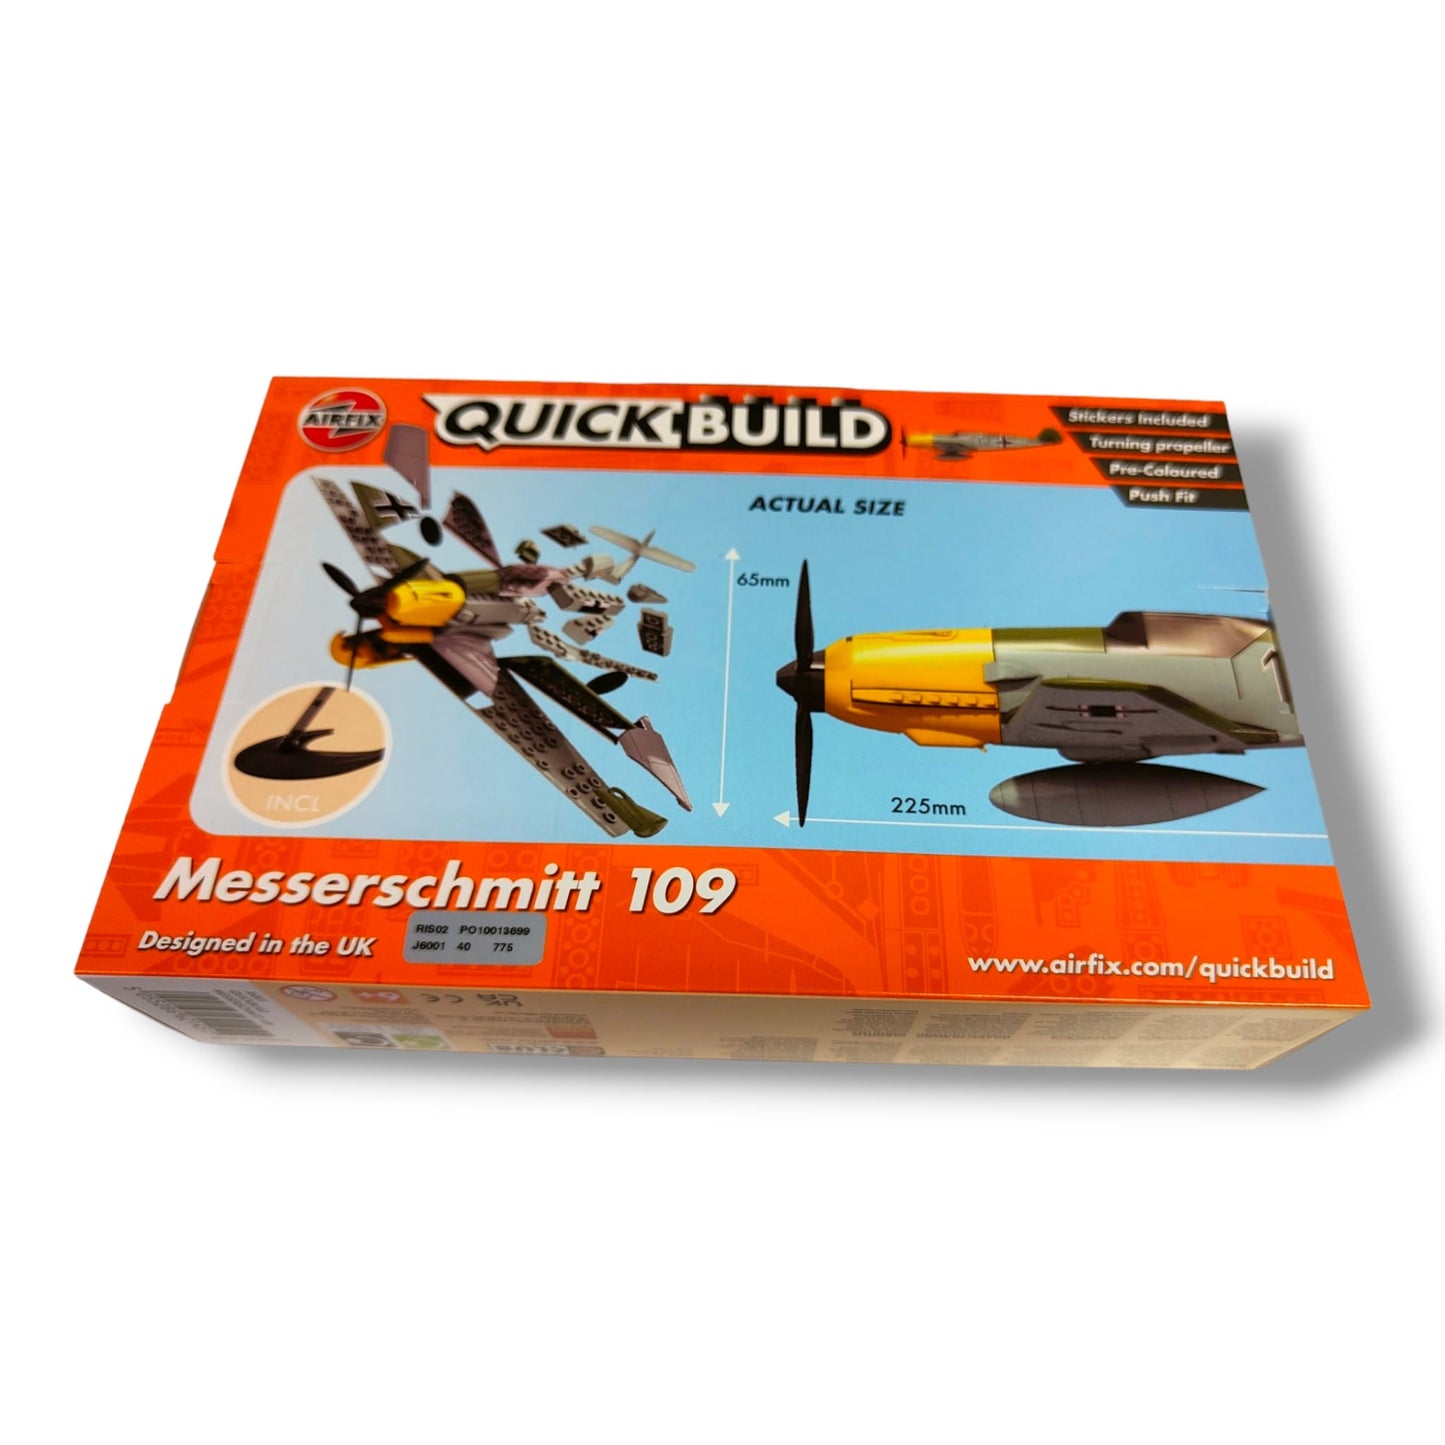 QUICK BUILD AIRFIX Messerschmitt 109